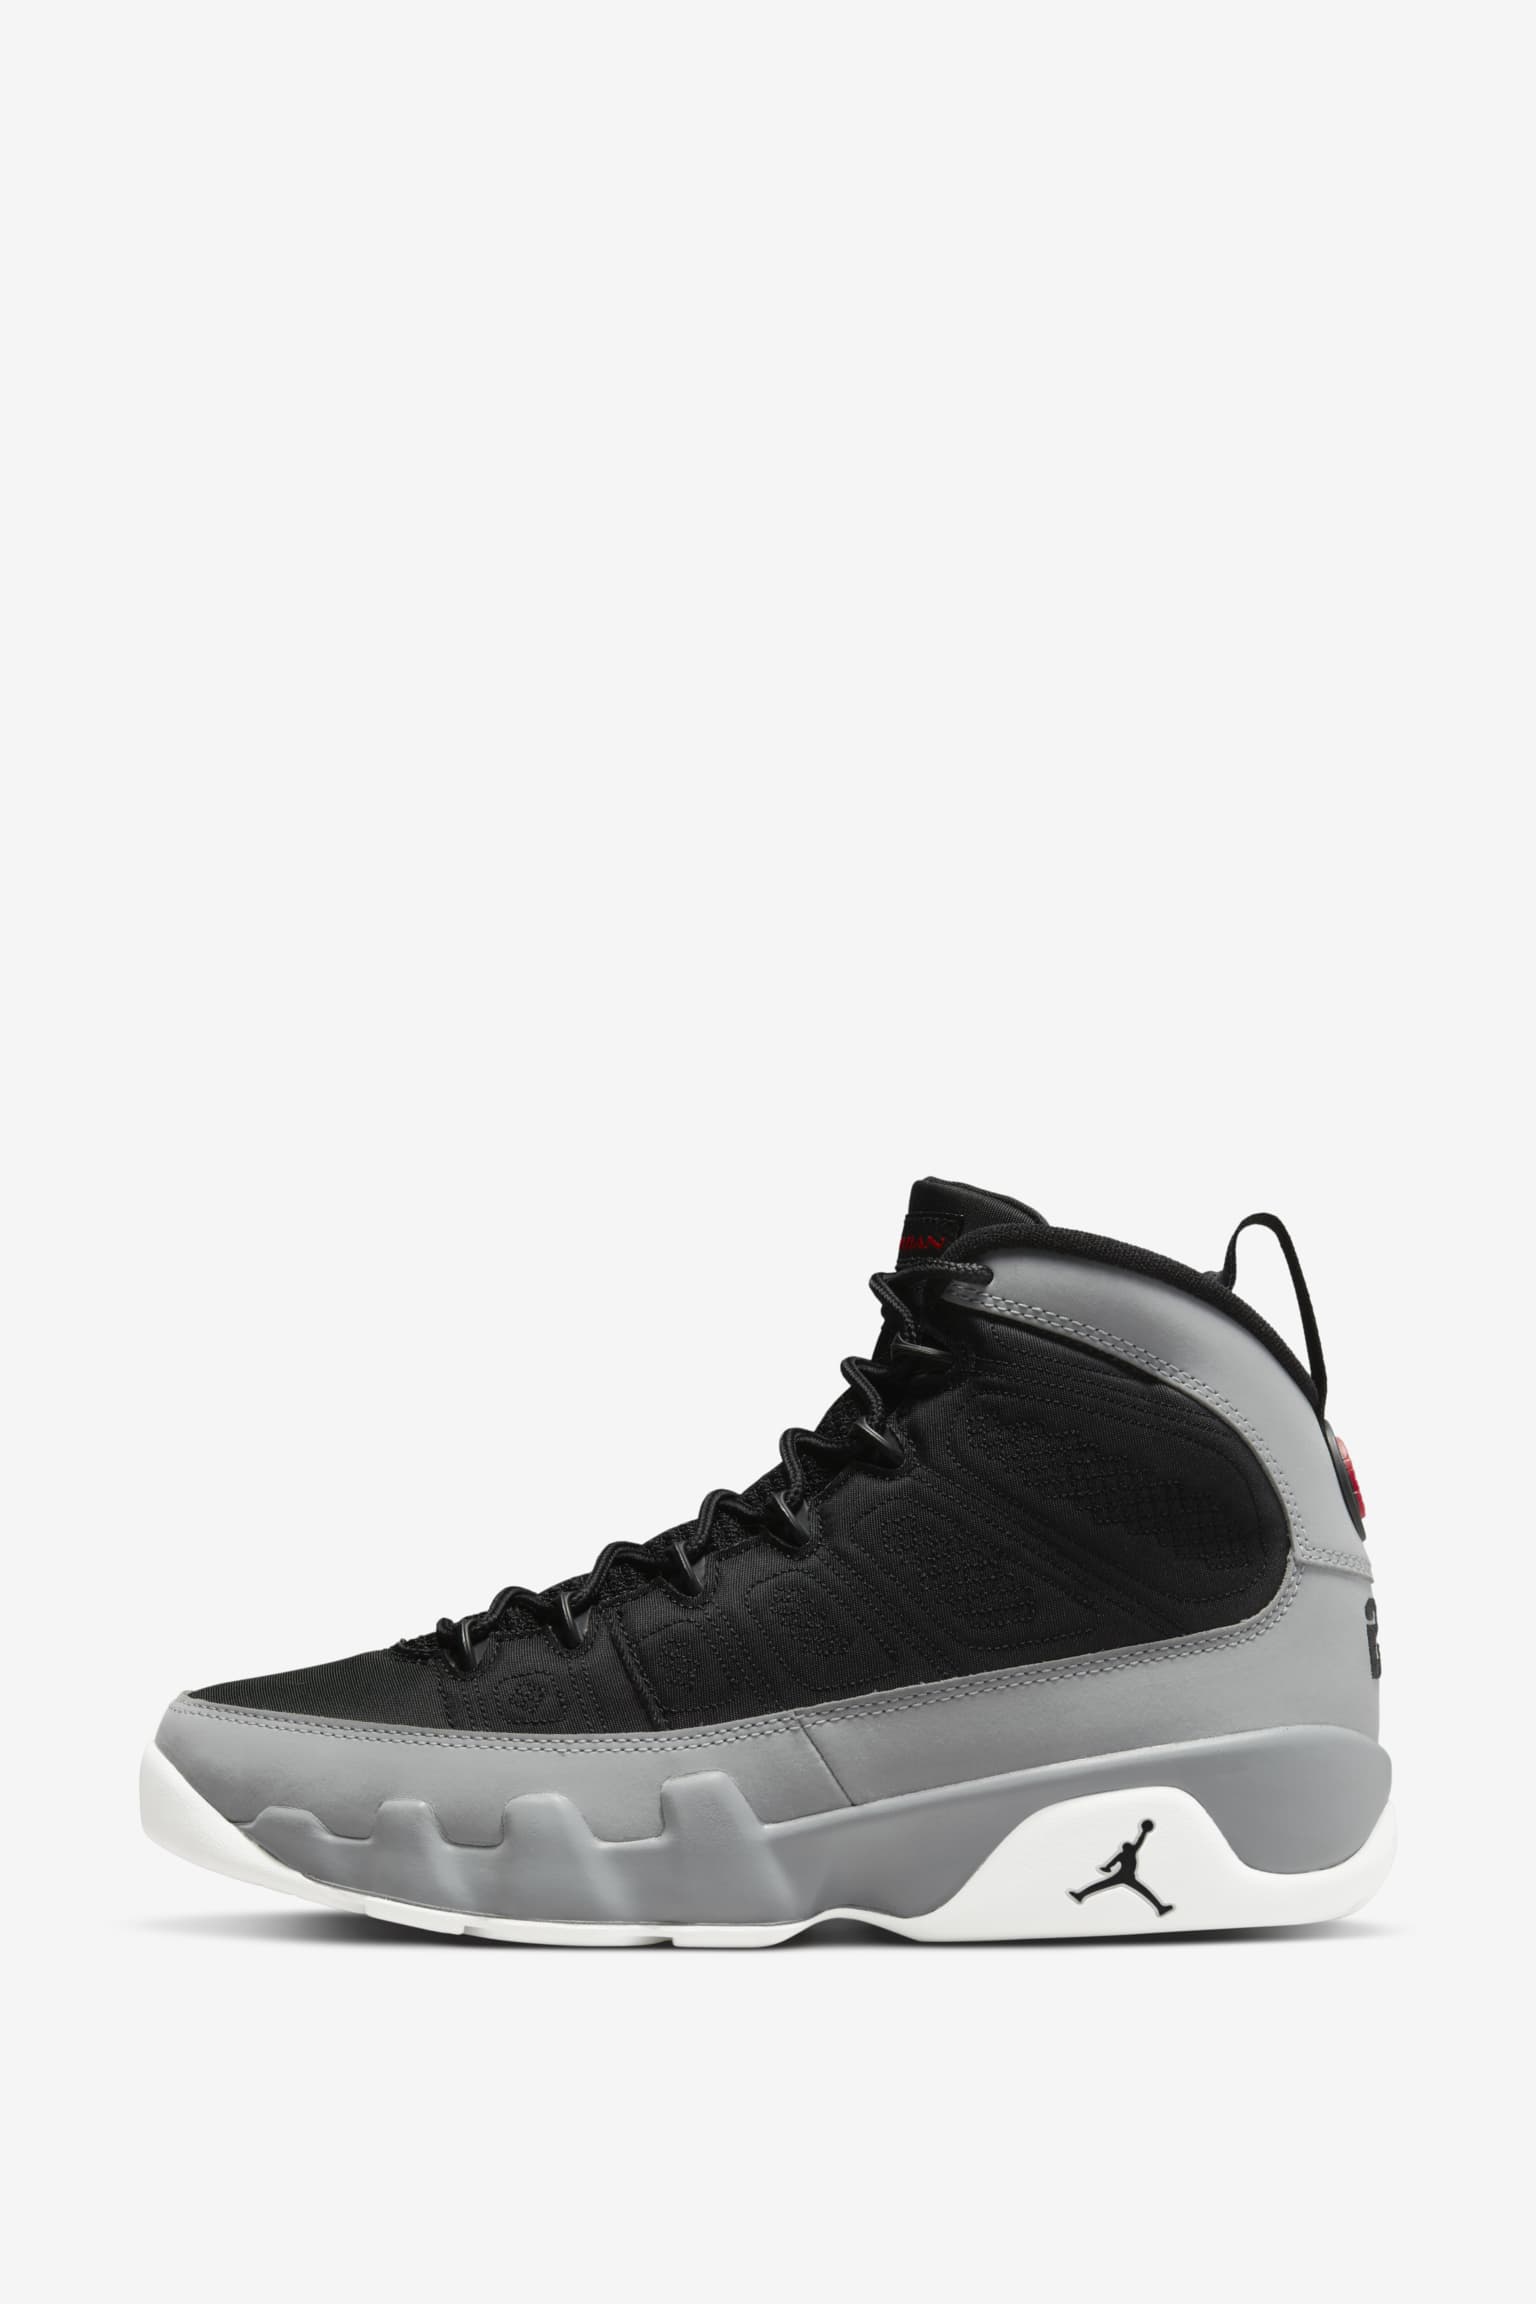 preocupación Predicar Brillante Fecha de lanzamiento de las Air Jordan 9 "Black and Particle Grey"  (CT8019-060). Nike SNKRS ES